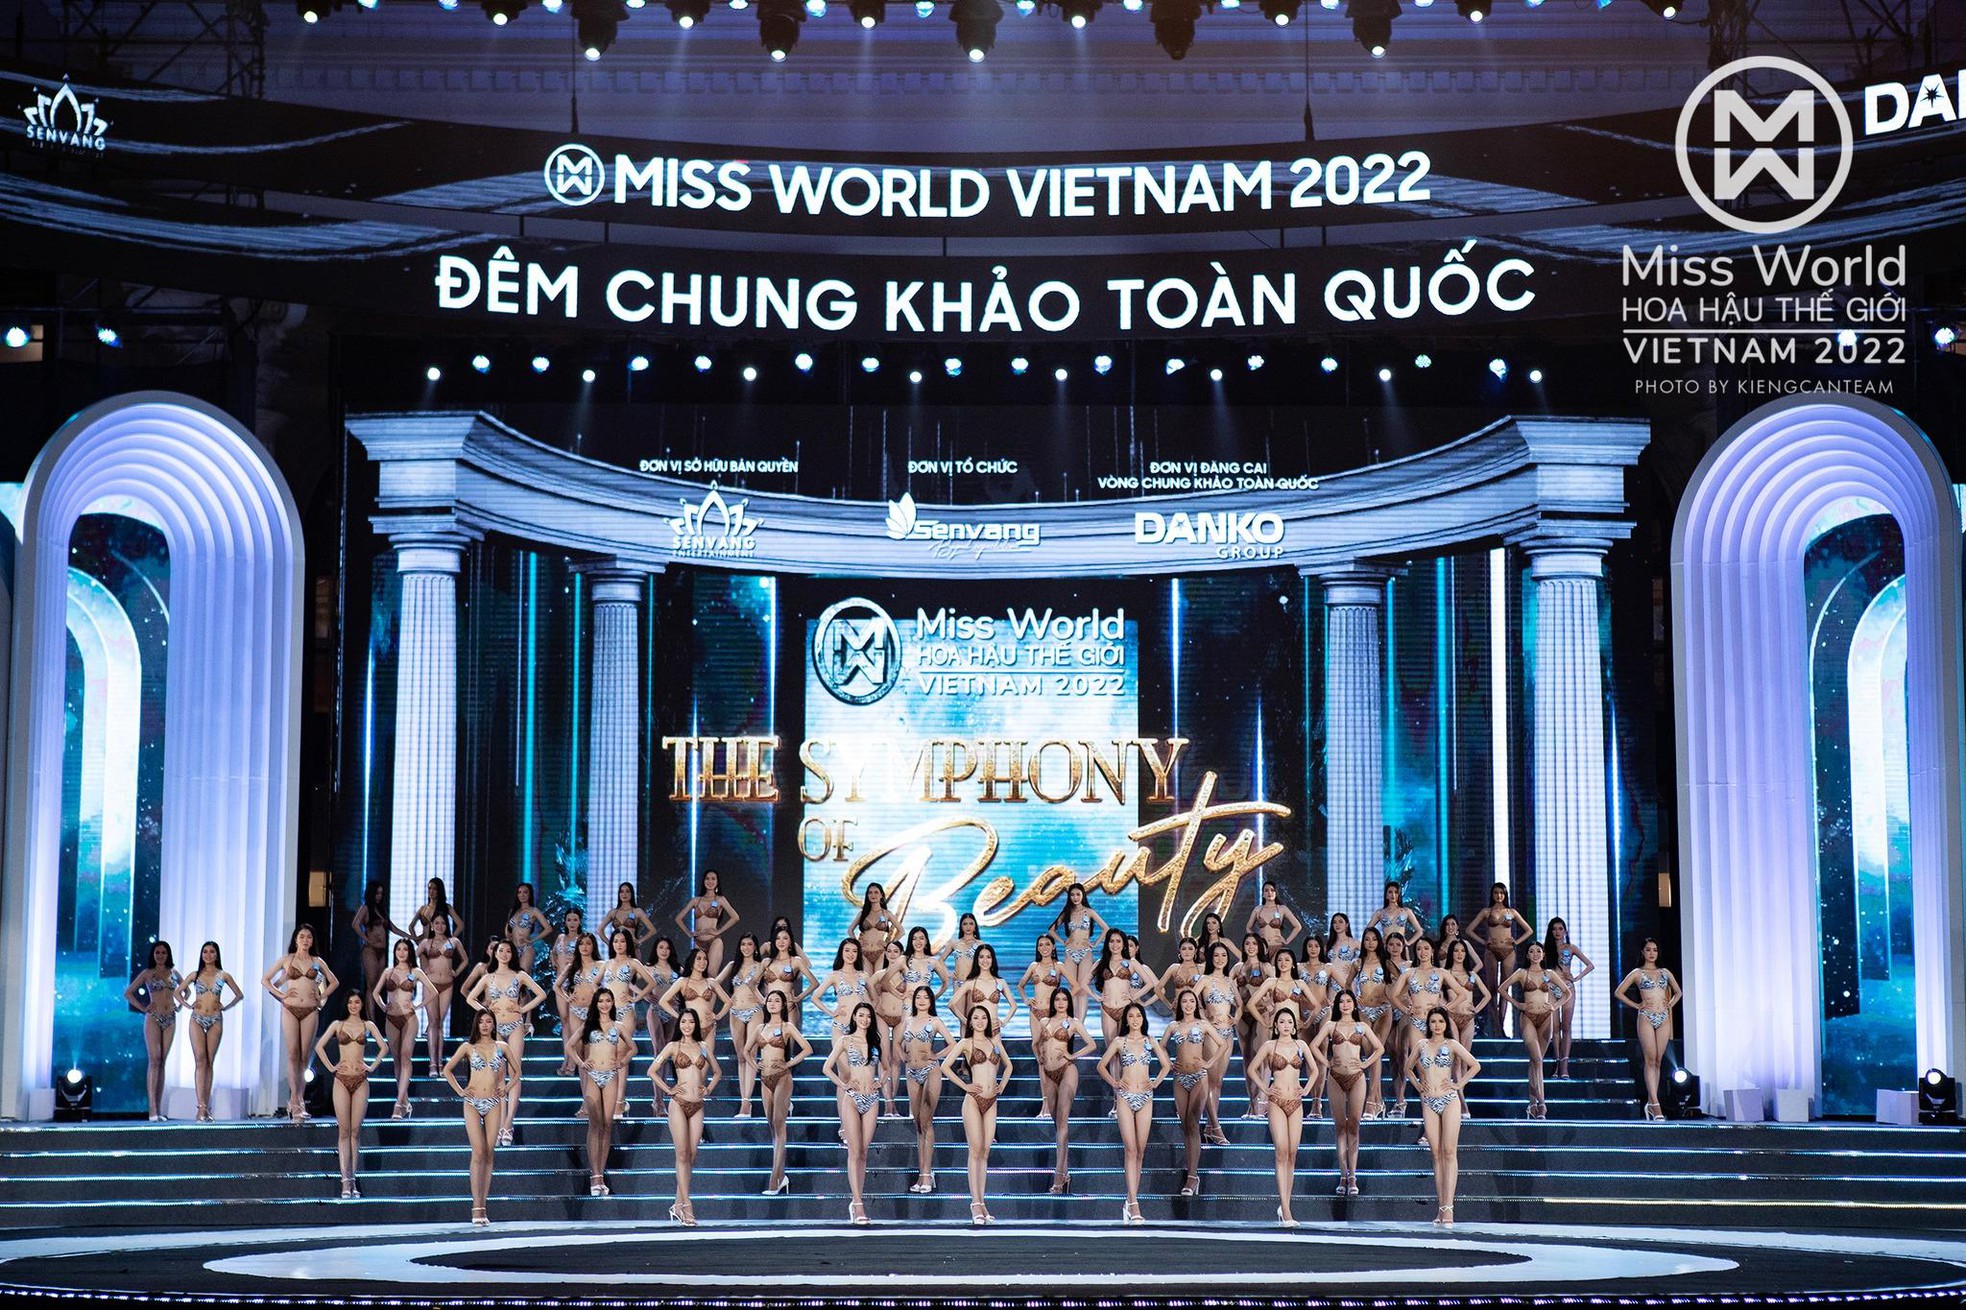 Nhìn lại màn đồng diễn bikini nóng bỏng đẹp mắt của top 45 Miss World Việt Nam 2022 - Ảnh 8.